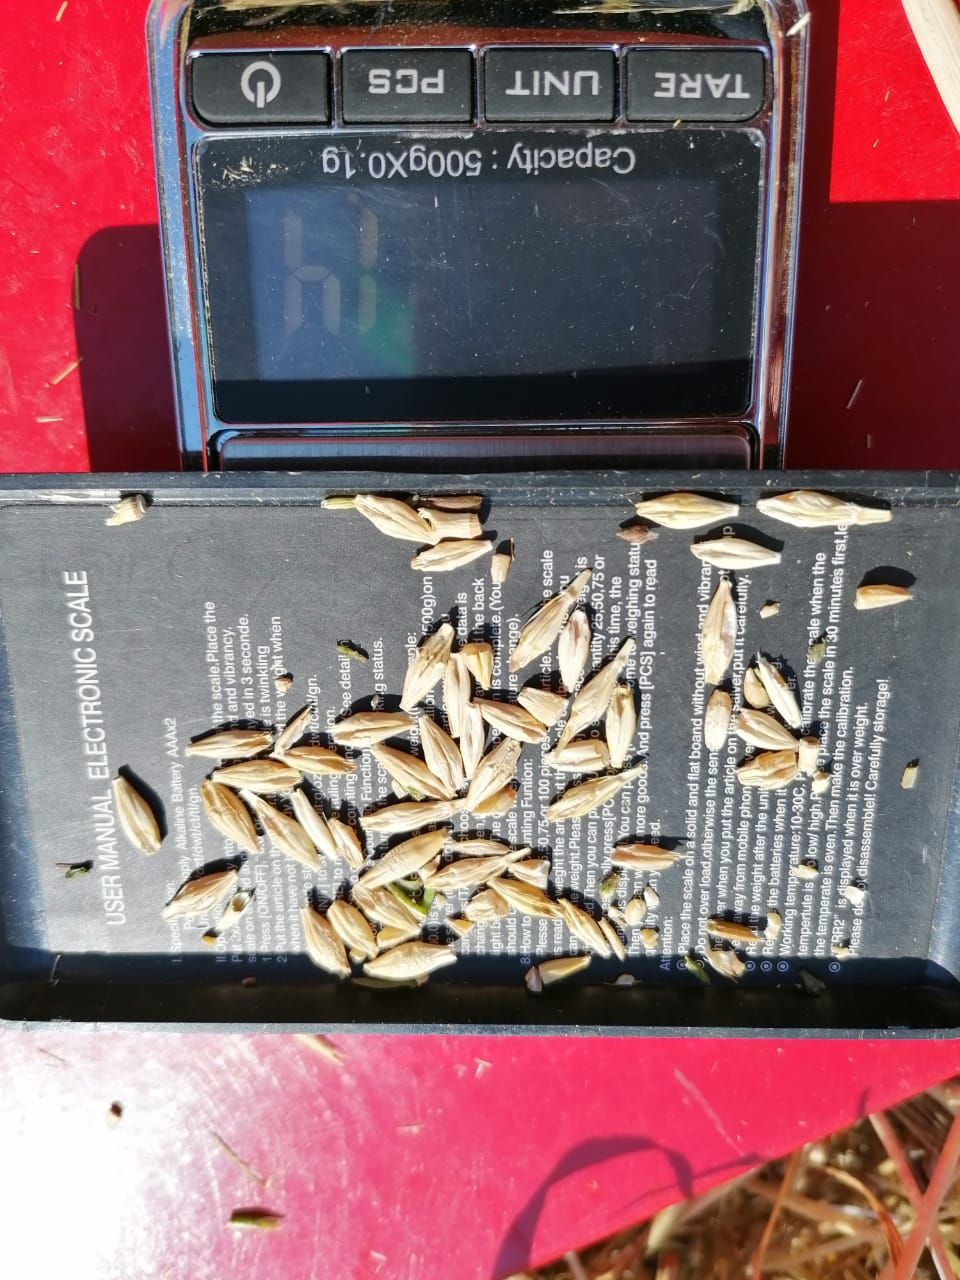 Комбайны «Август-Камское Устье» проверяются на наличие потерь зерна специализированным инструментом